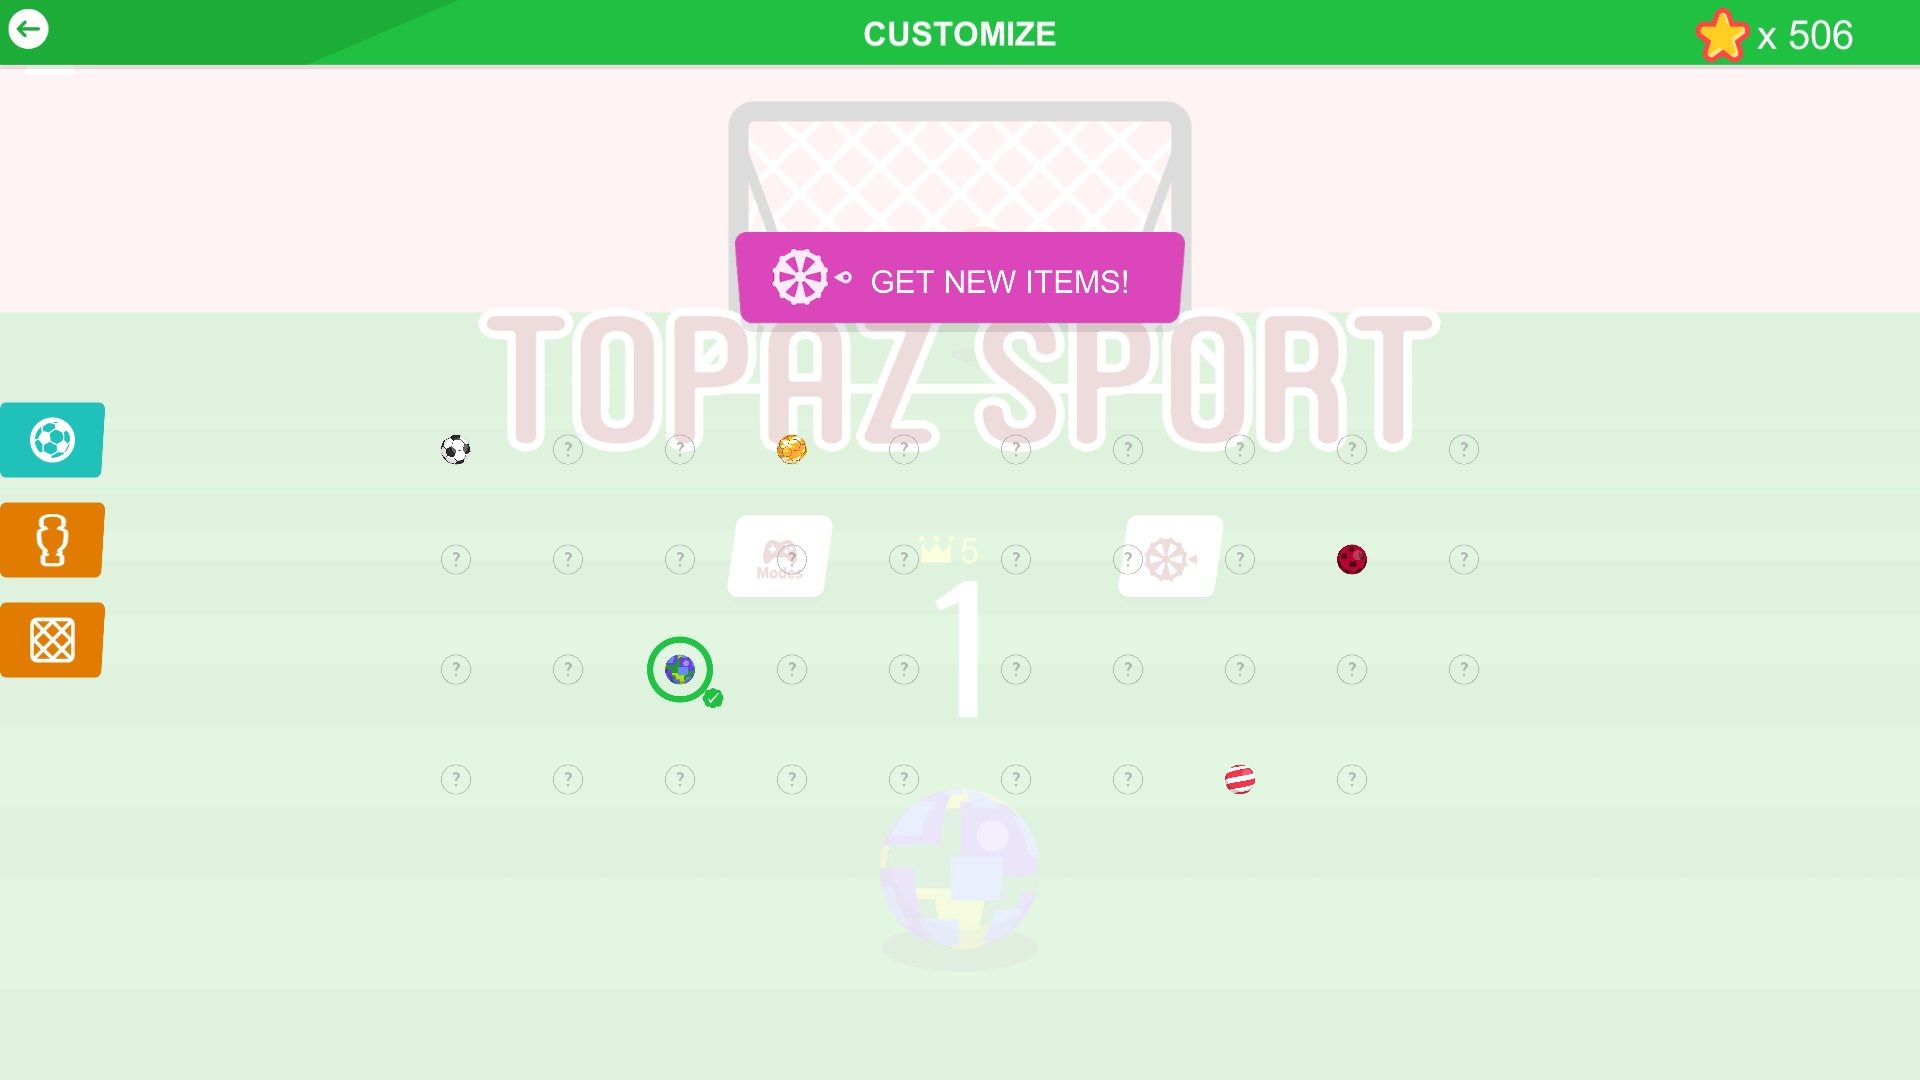 Topaz Sport